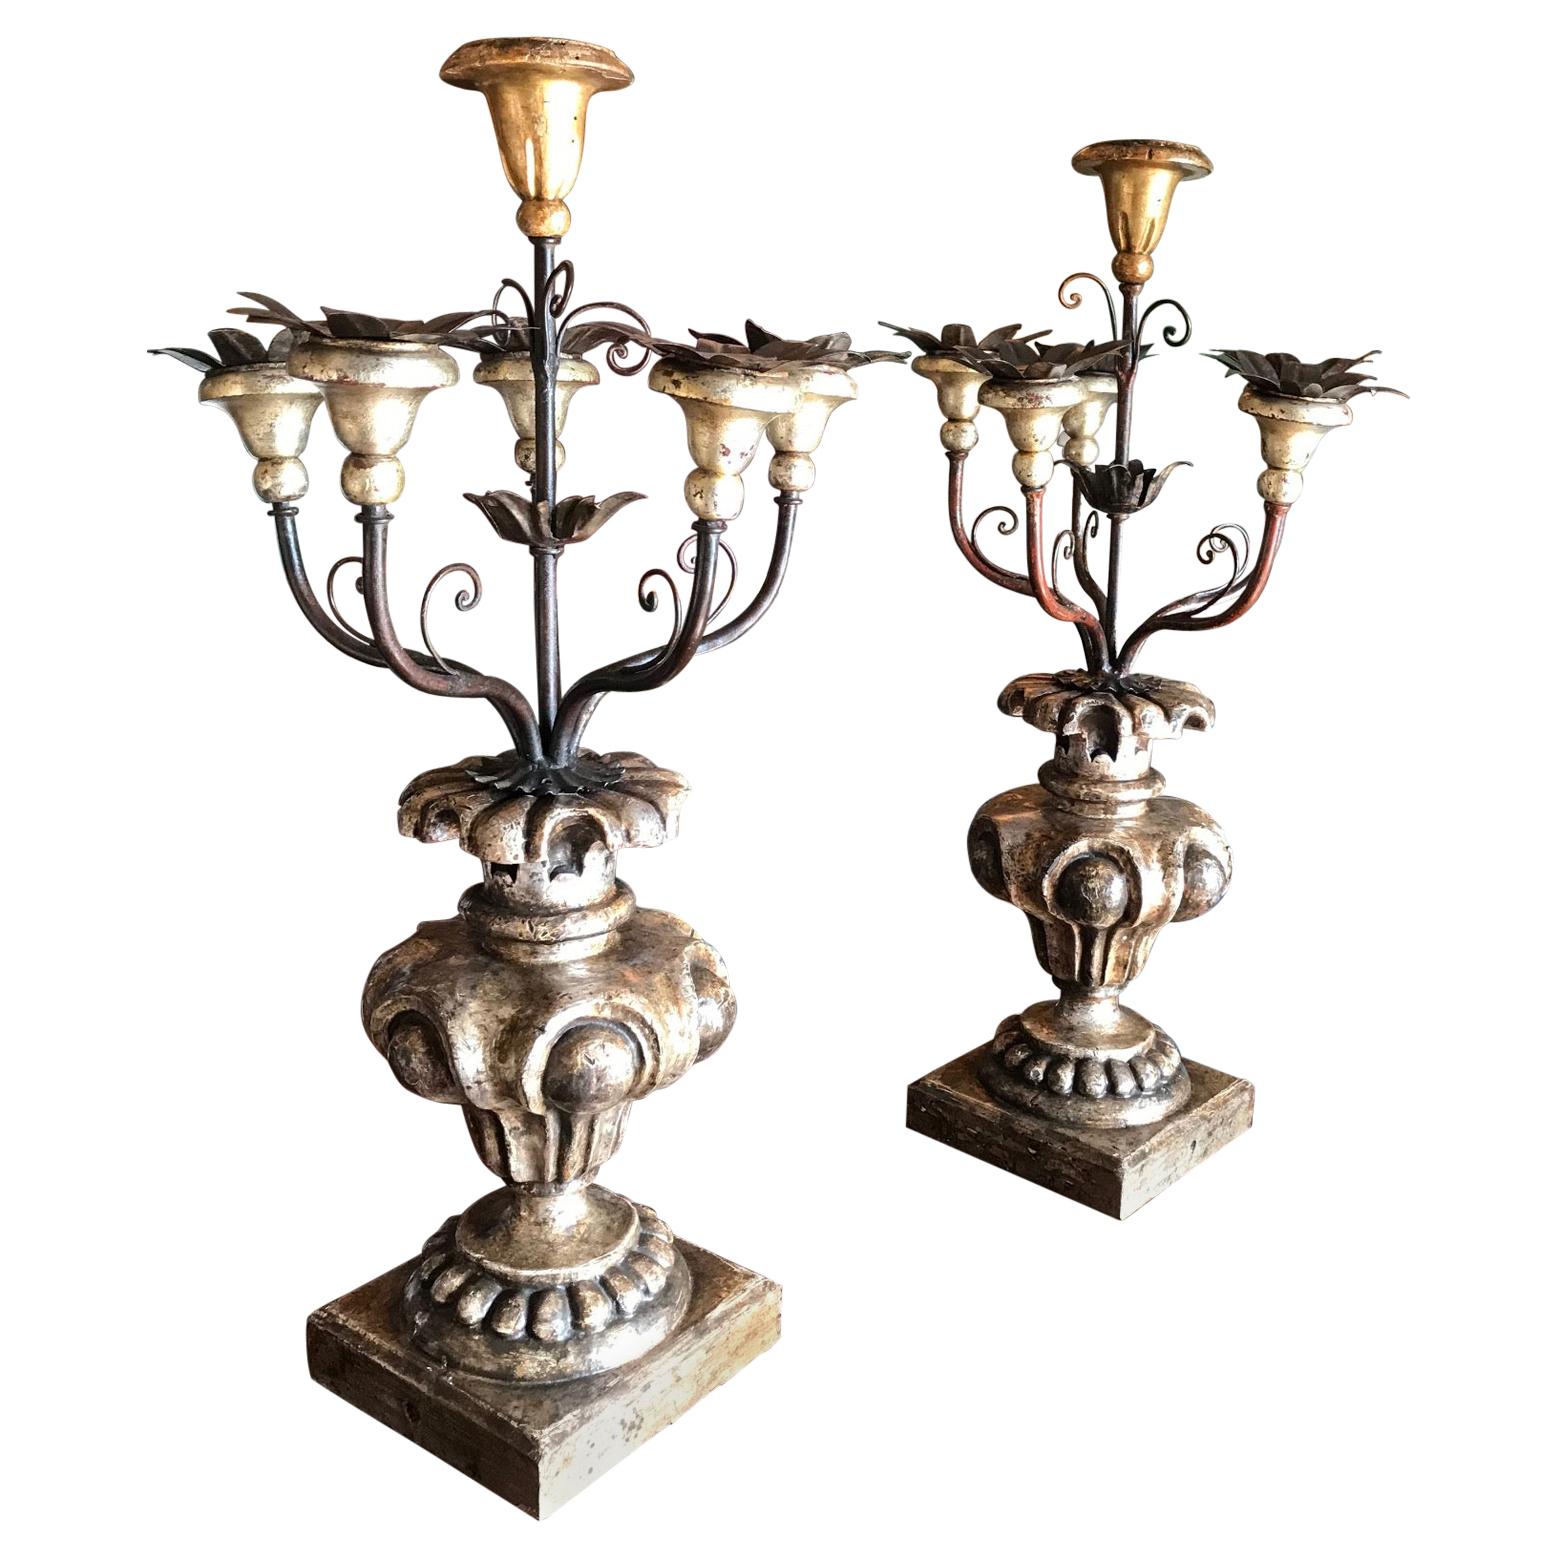 Paire de candélabres en bois et métal du 18ème siècle, objet cadeau ancien d'appoint LA en vente